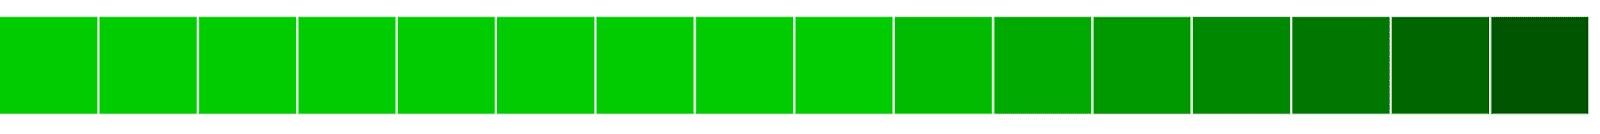 Horizontale Ausrichtung grüner Blöcke, die von hell nach dunkel verlaufen.